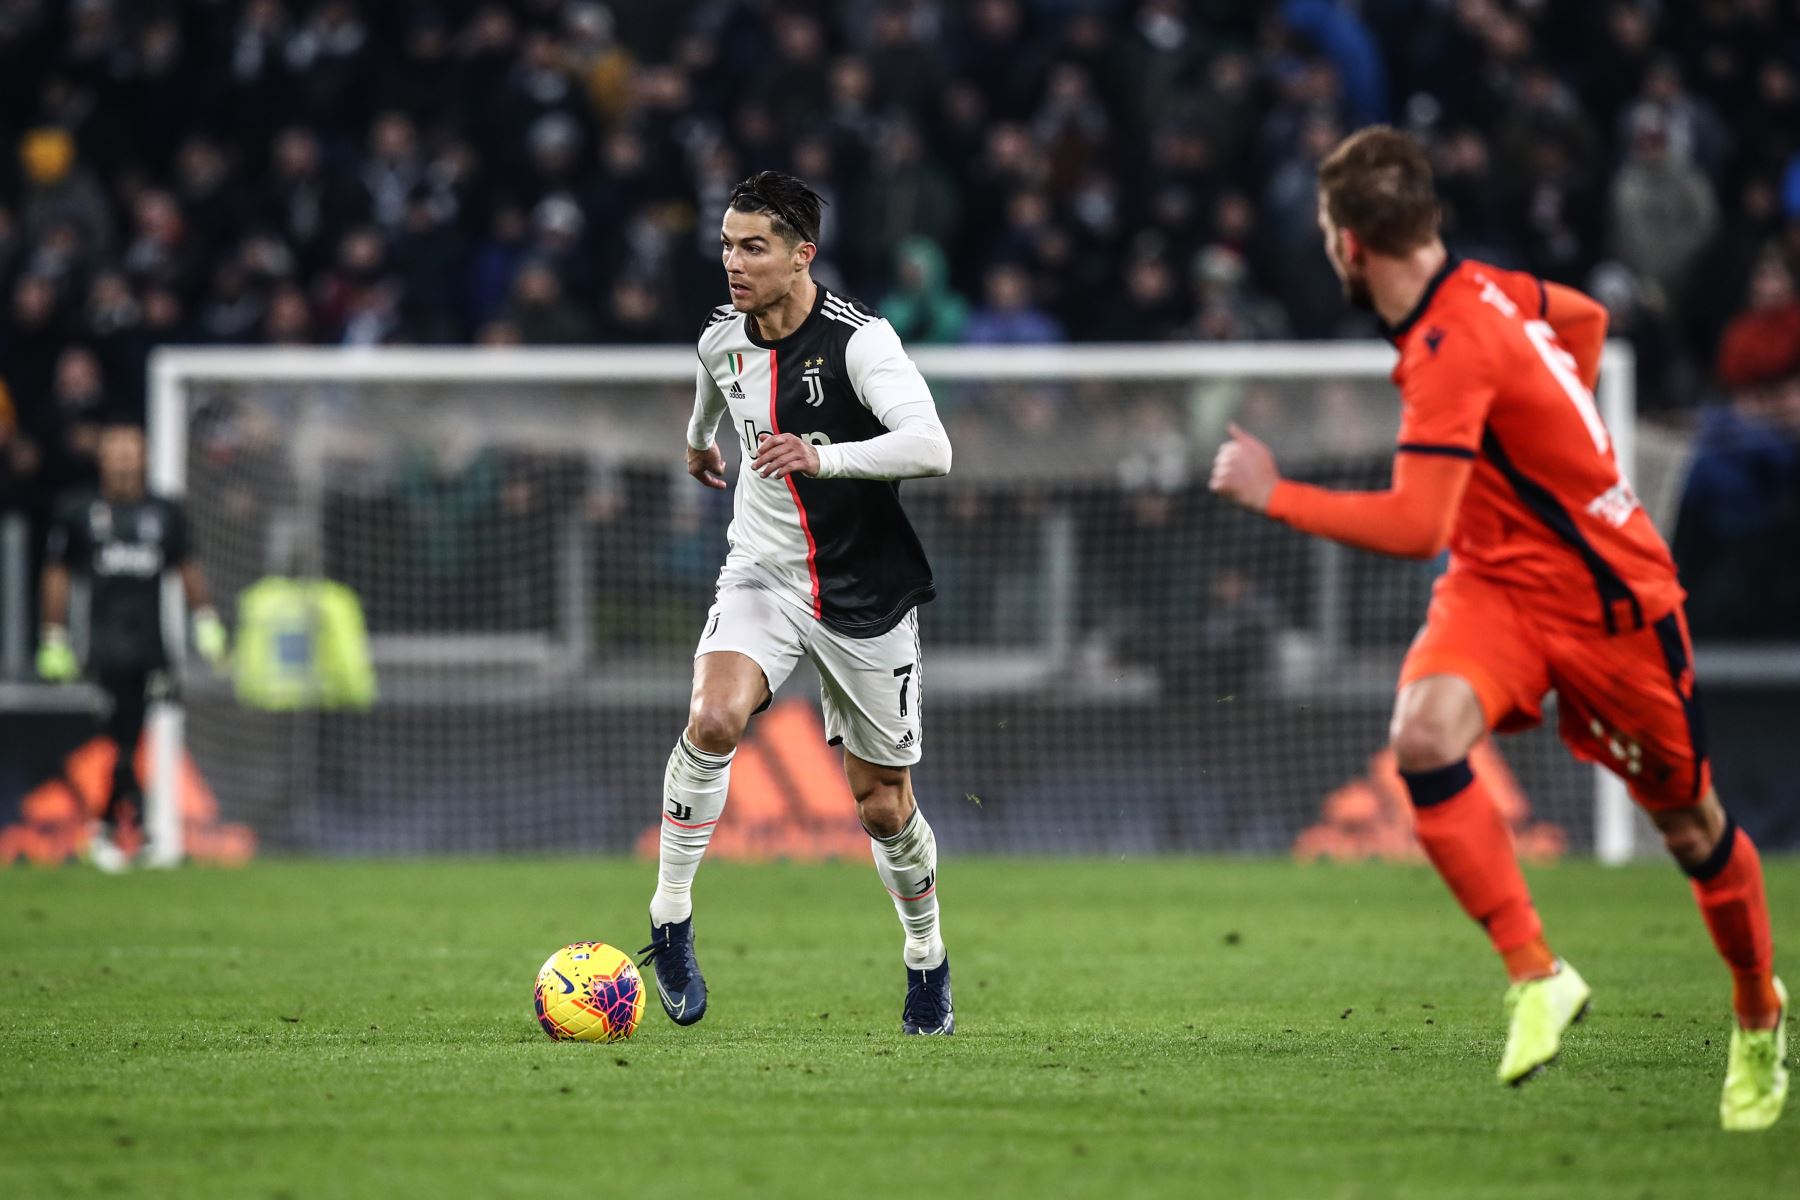 El delantero portugués de la Juventus, Cristiano Ronaldo, corre con el balón durante el partido de fútbol de la Serie A italiana Juventus vs Udinese.
Foto: AFP